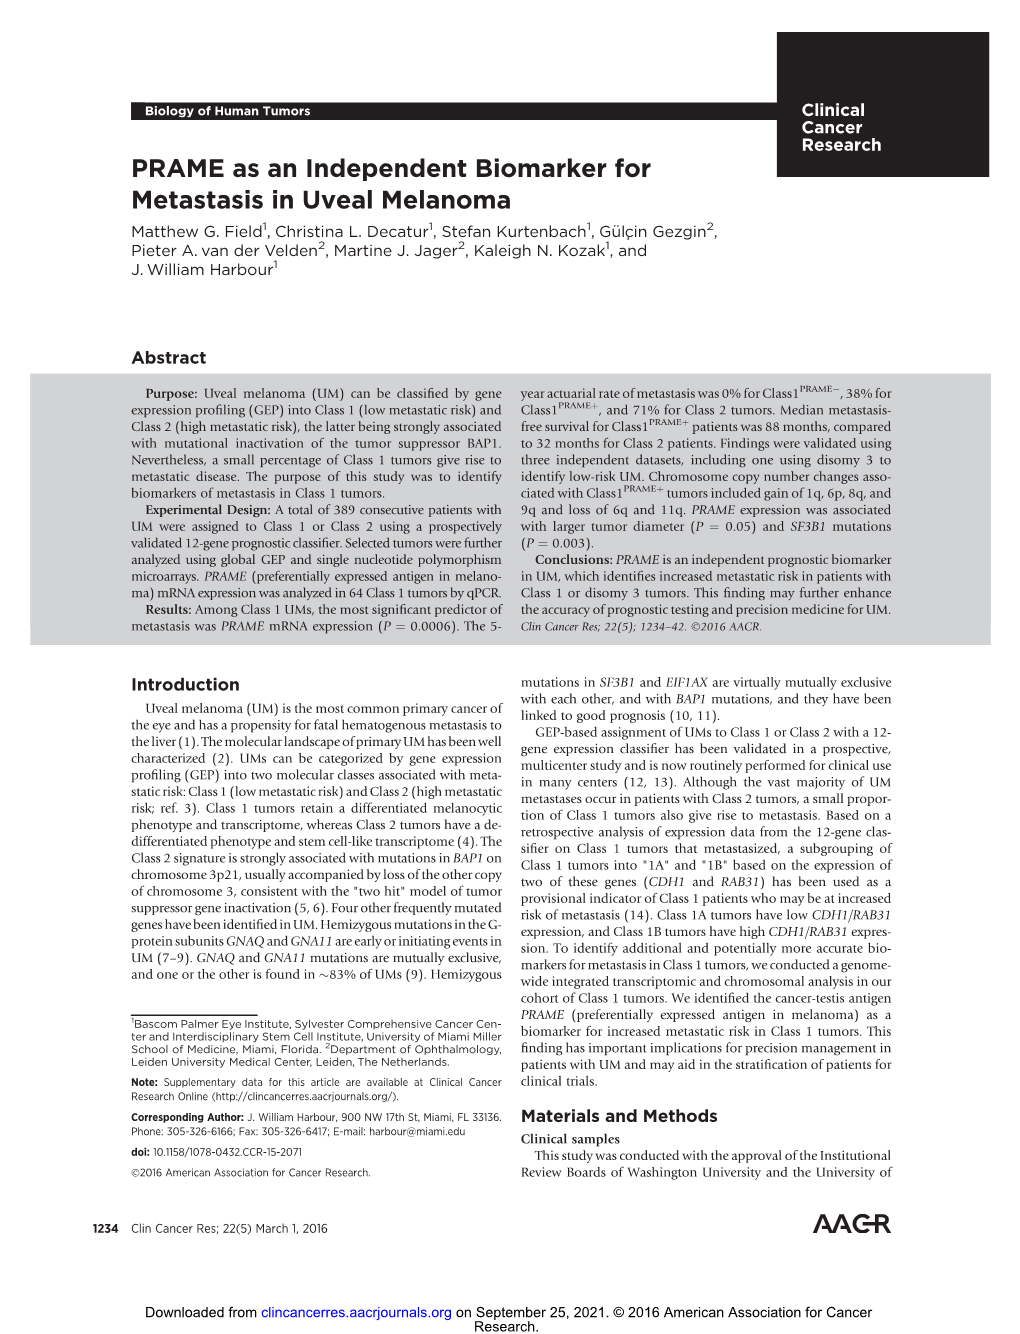 PRAME As an Independent Biomarker for Metastasis in Uveal Melanoma Matthew G